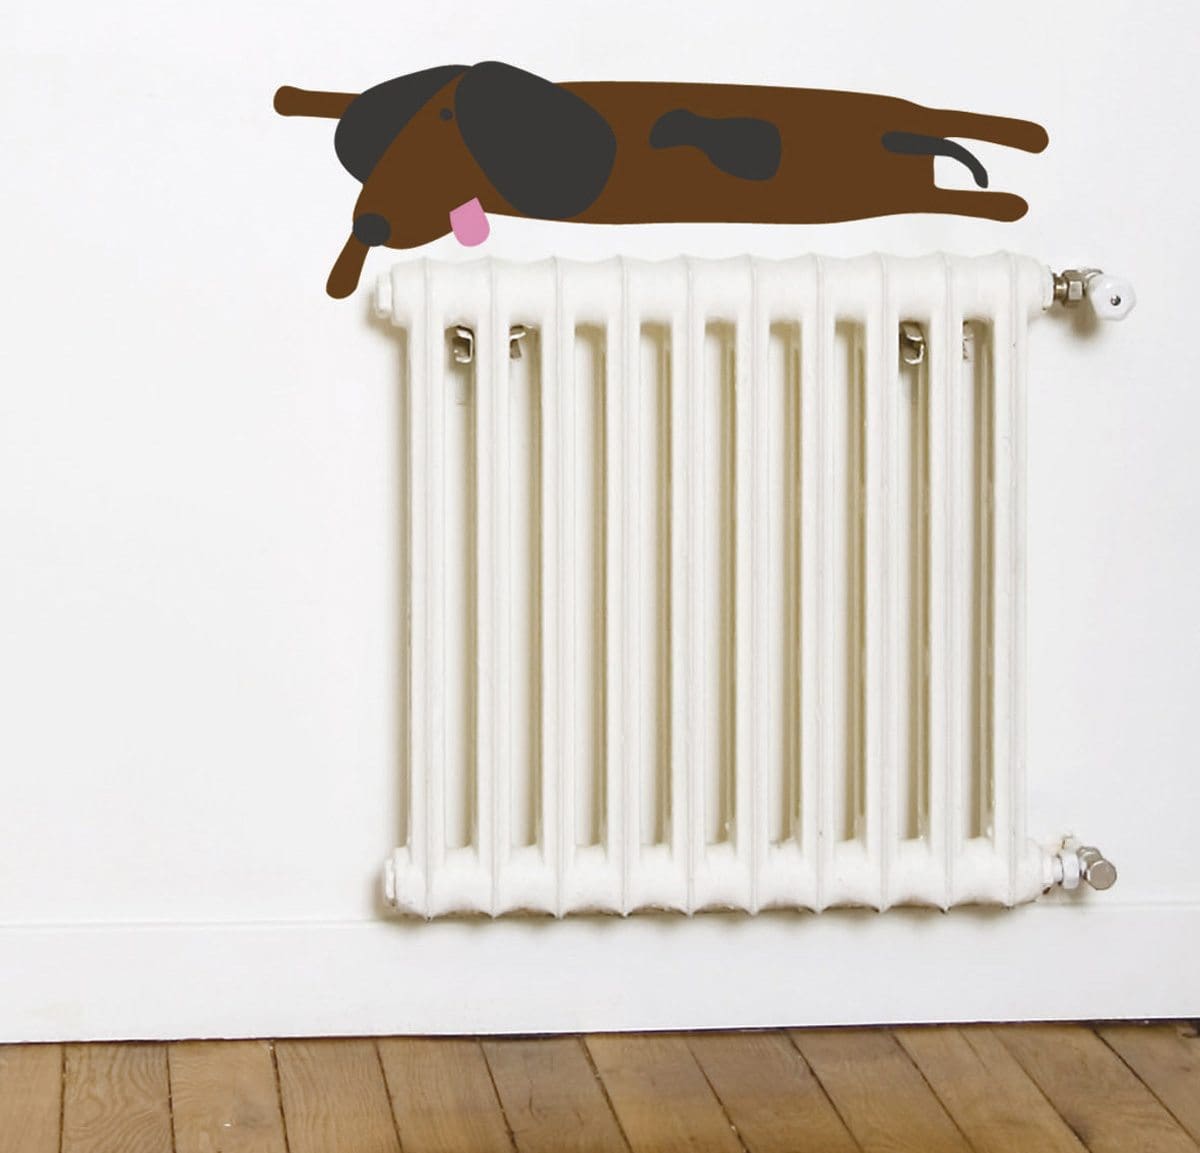 Wallsticker Dogenkit, 5 chien à personnaliser sur vos murs, design IchetKar 